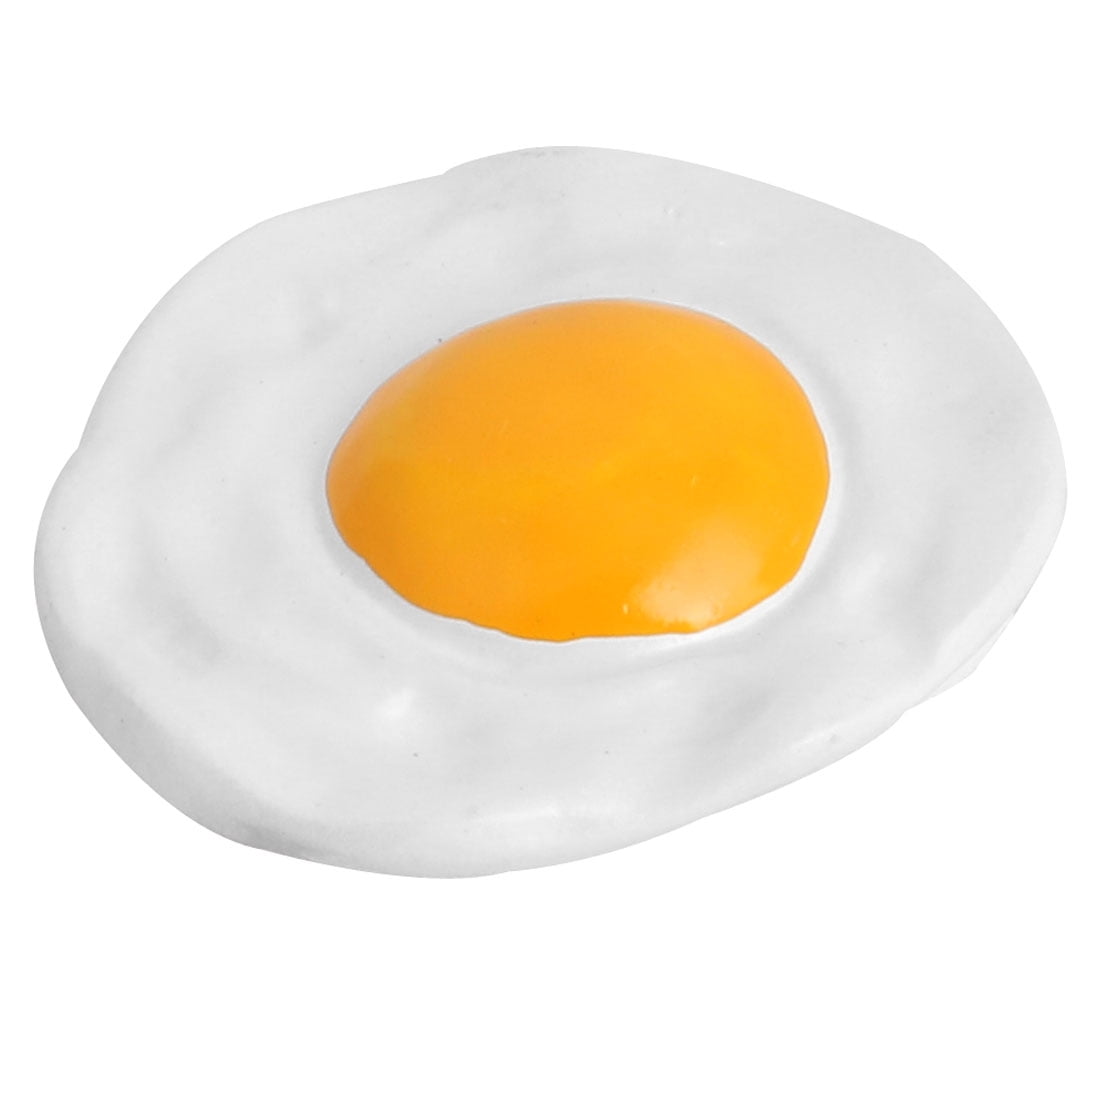 Details about   Household Fridge Resin Simulation Fried Egg Design Decoration Magnet Sticker